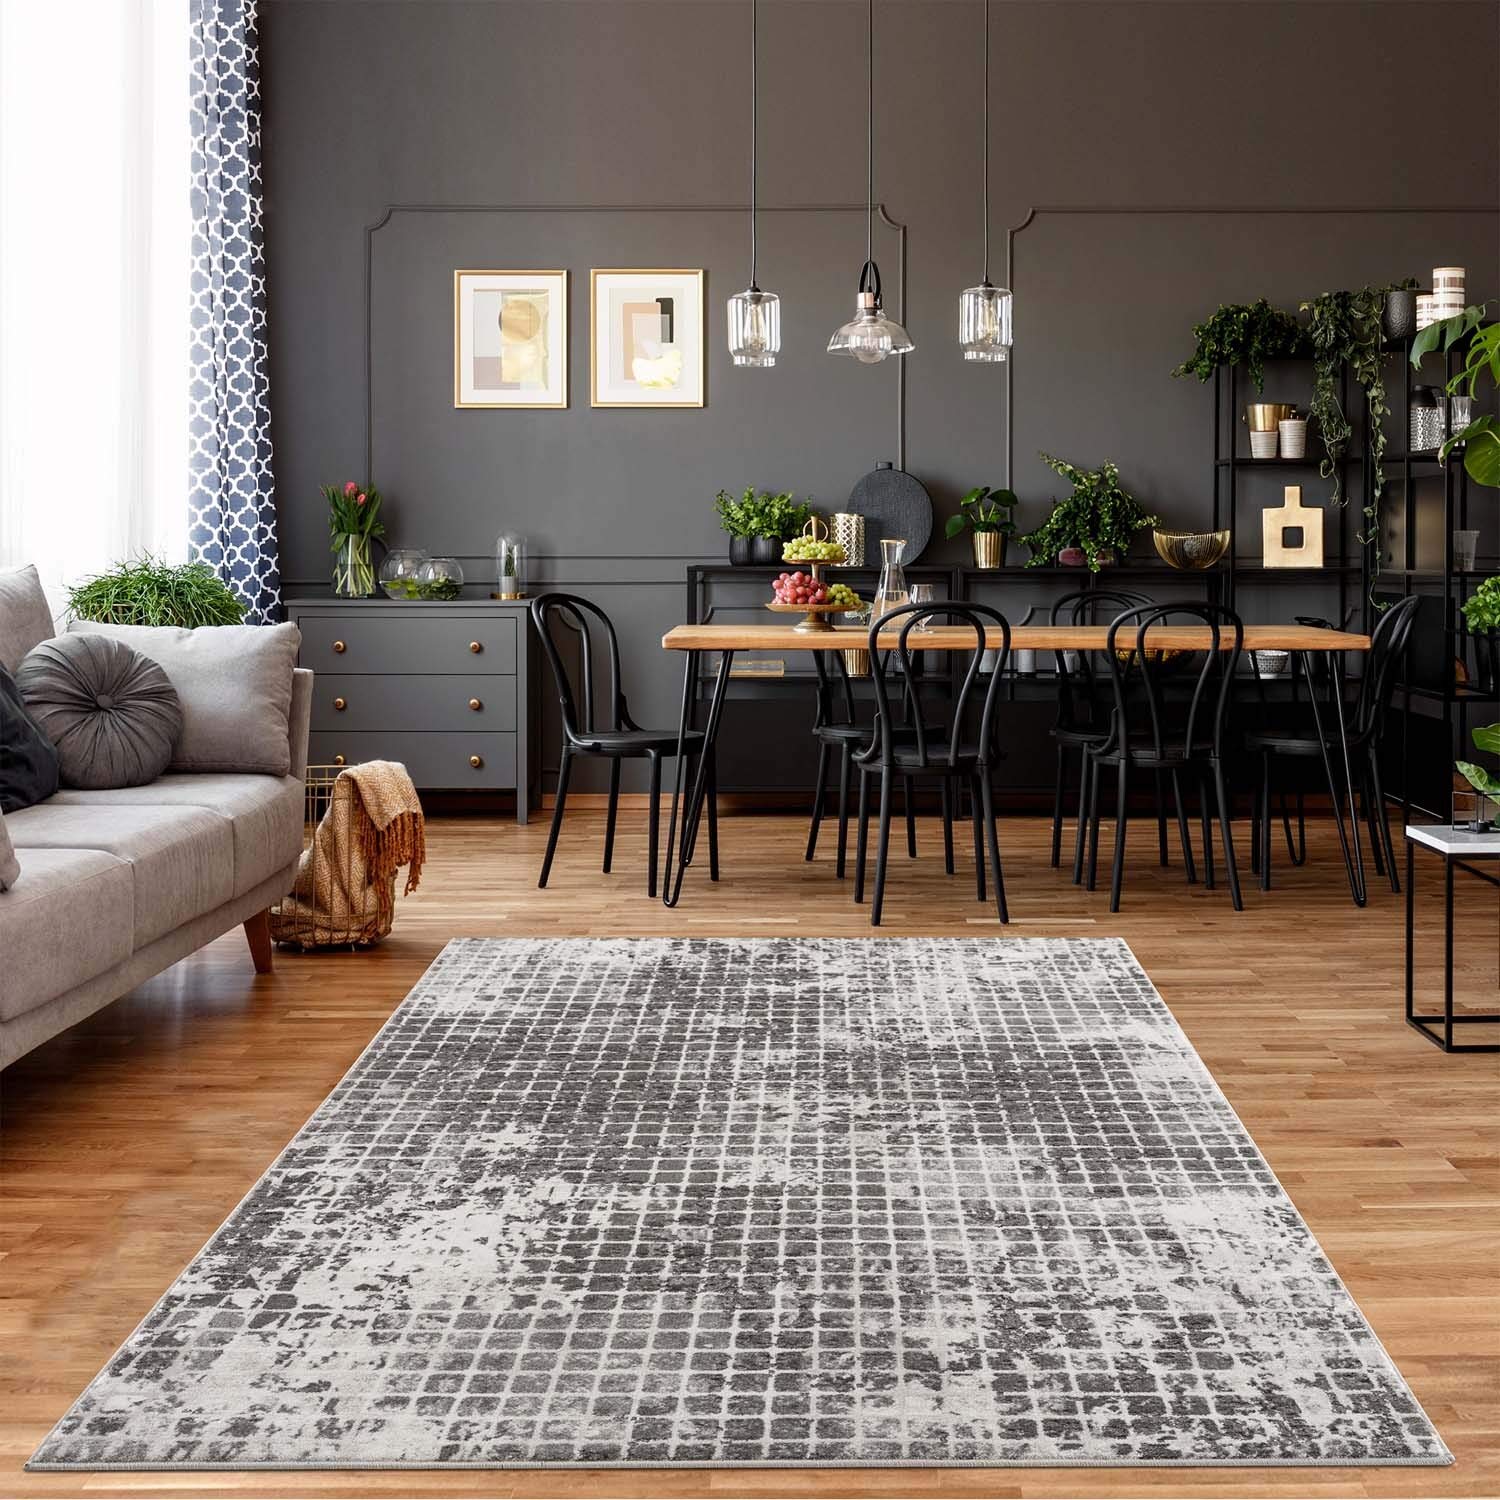 carpet city Teppich Wohnzimmer - Karo-Muster 80x150 cm Grau Meliert - Moderne Teppiche Kurzflor